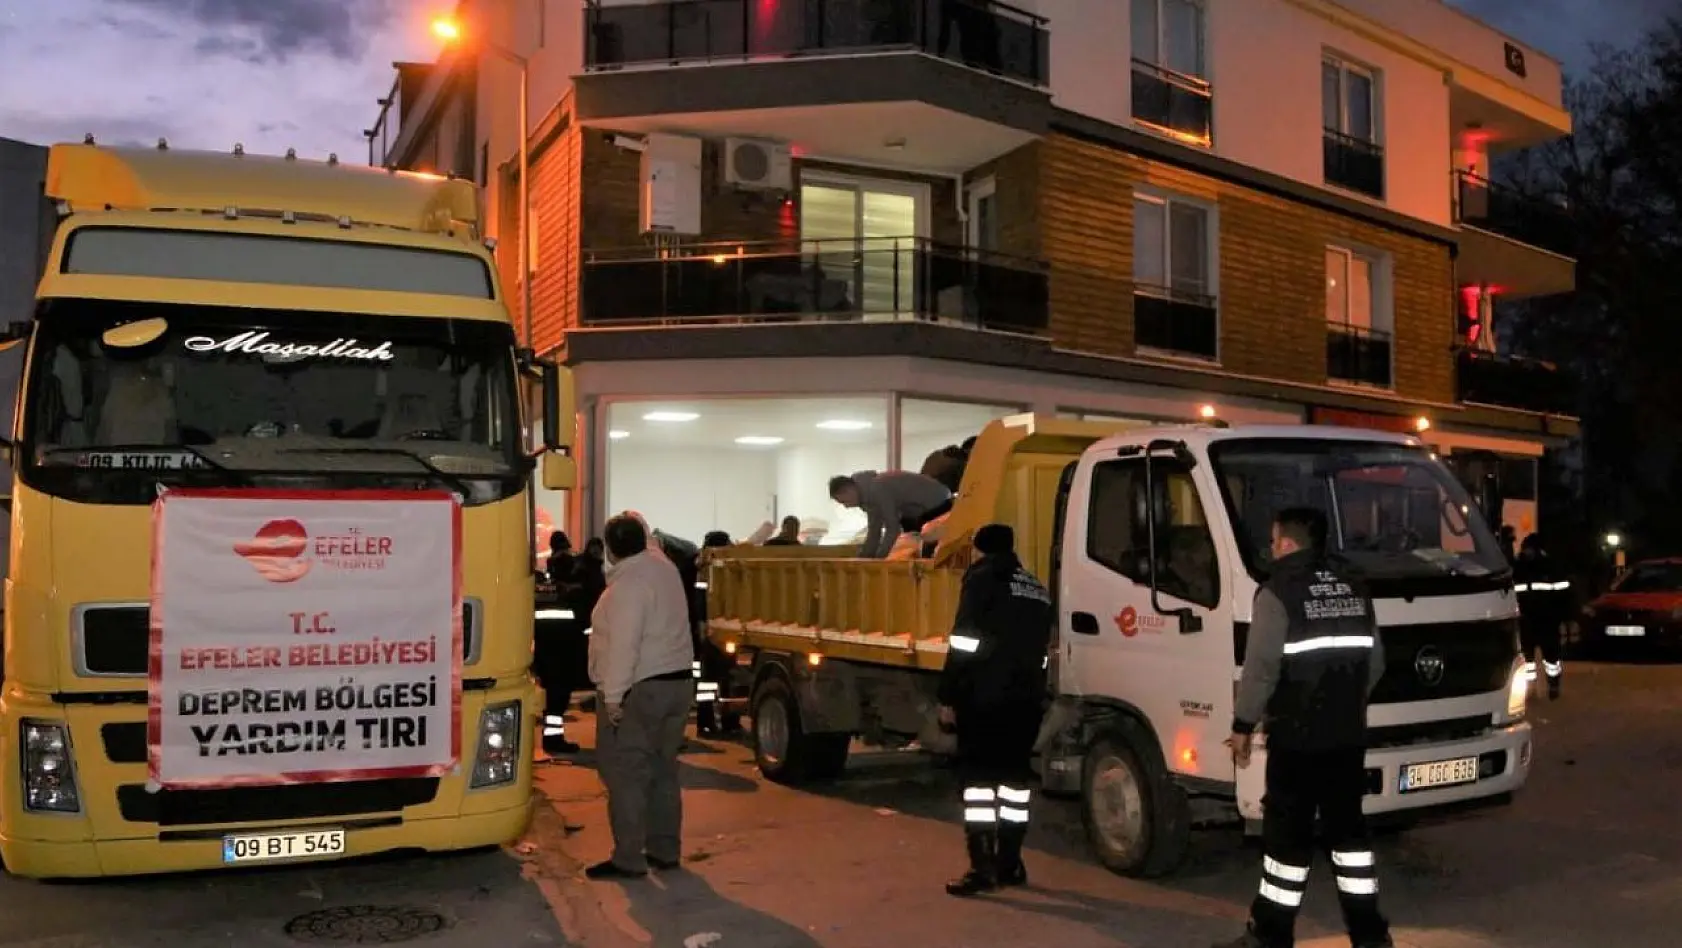 Efeler Belediyesi'nin yardım tırı depremzedeler için yola çıktı